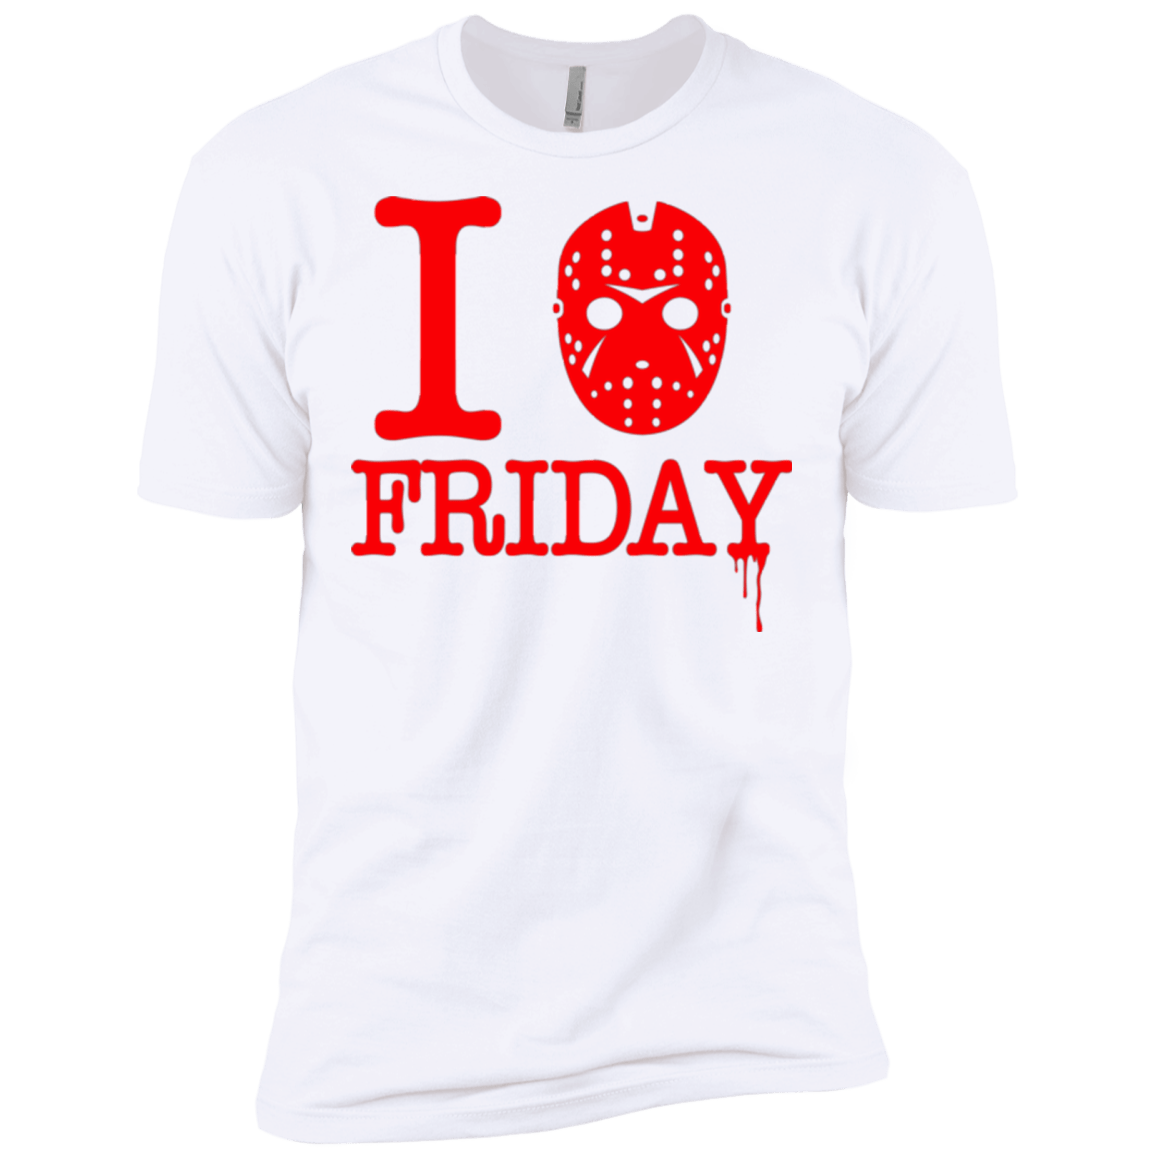 I Love Friday Men's Premium T-Shirt